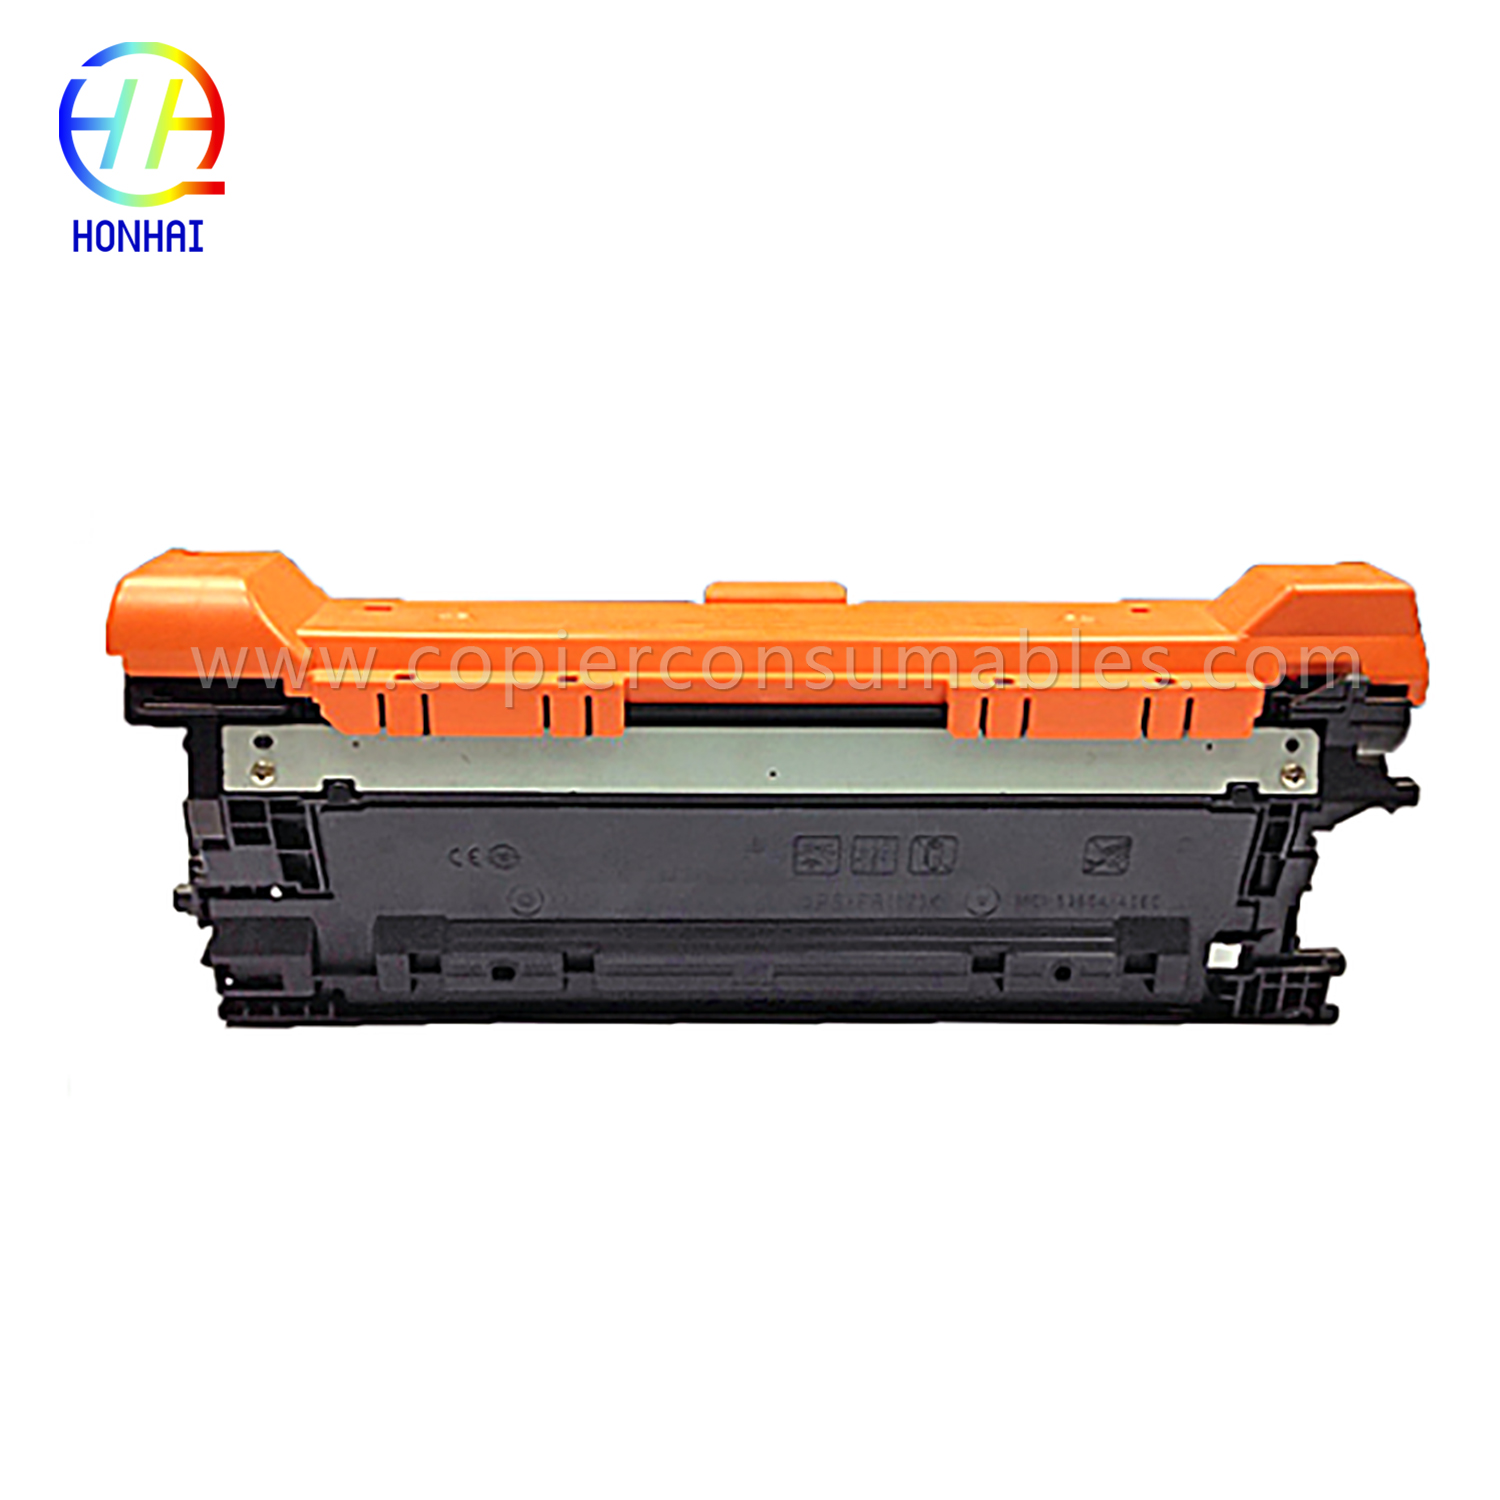 Cartridges Toner Reng HP Color Laserjet Enterprise M552 M553 (CF362X) -1 拷贝